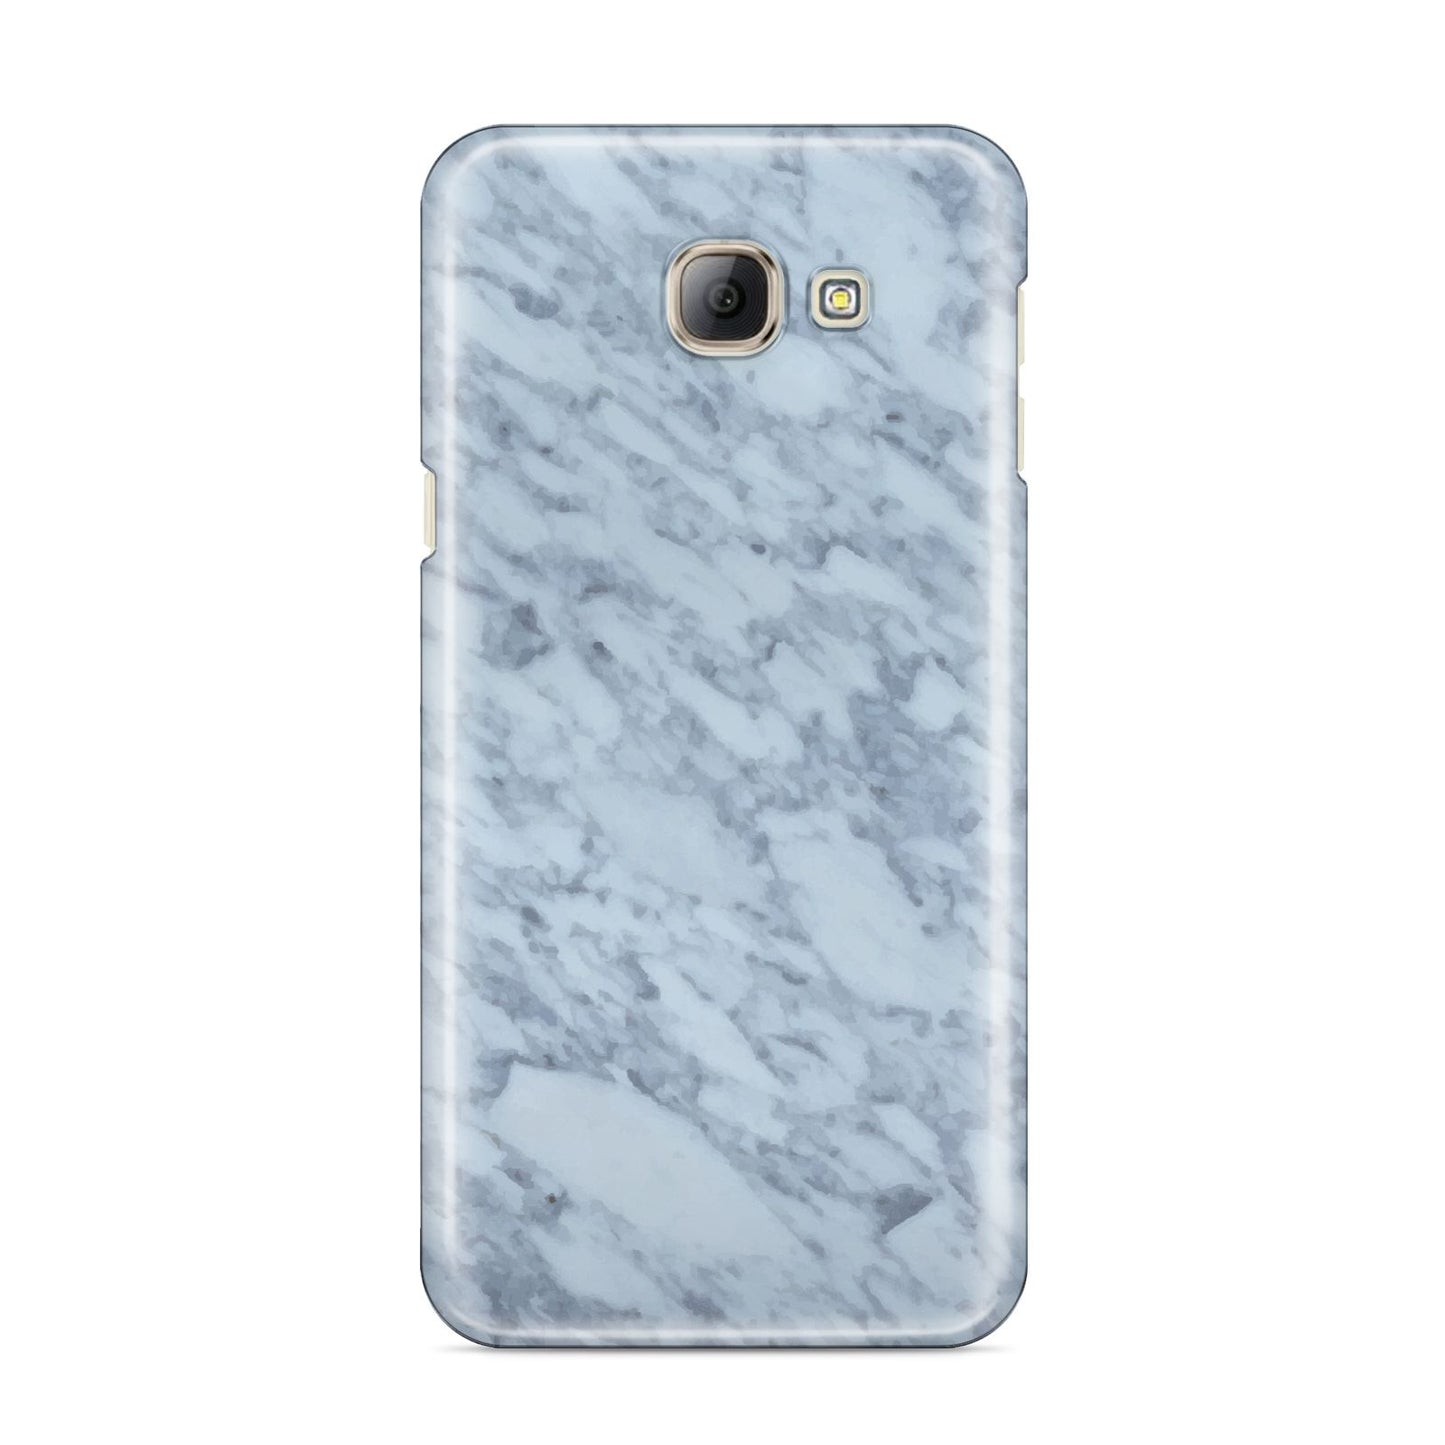 Faux Marble Grey 2 Samsung Galaxy A8 2016 Case